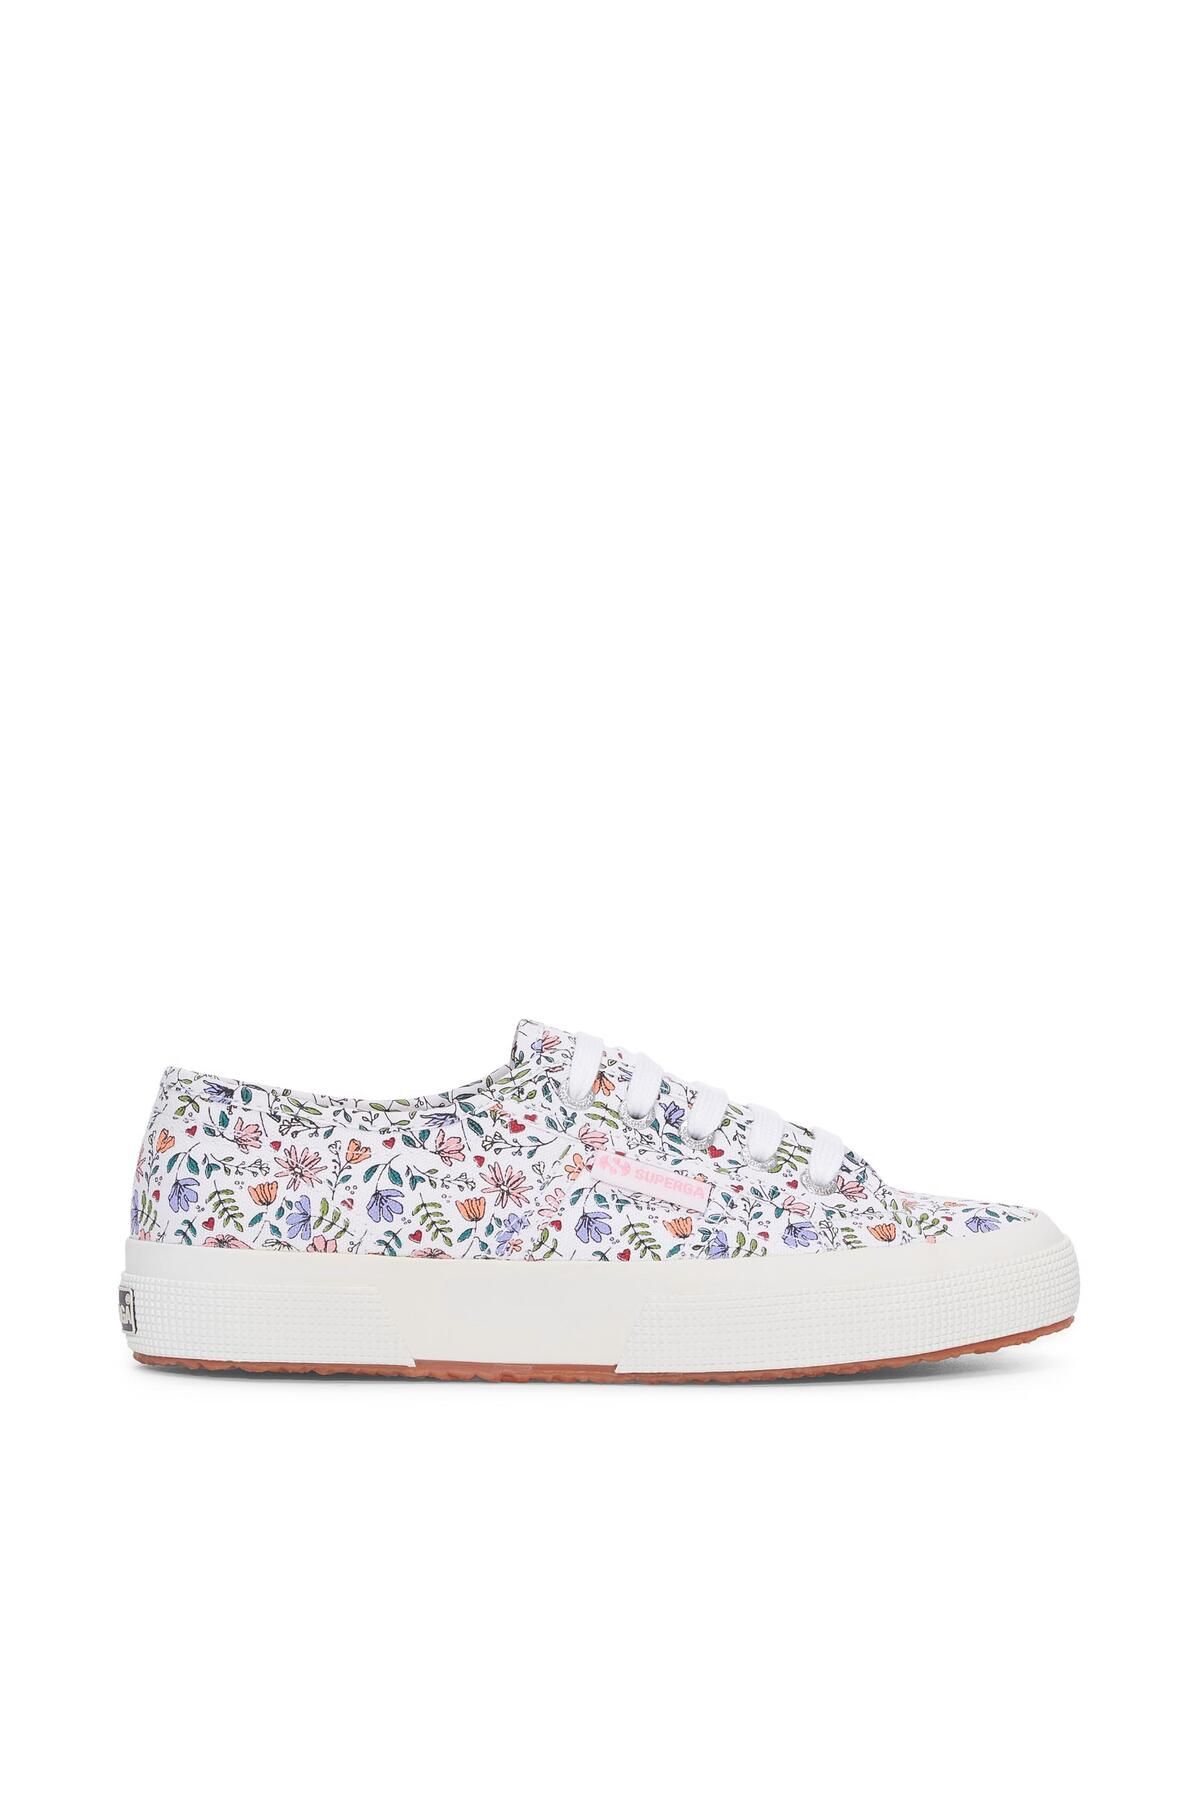 Superga 2750 Little Flowers Print Kadın Beyaz Sneaker